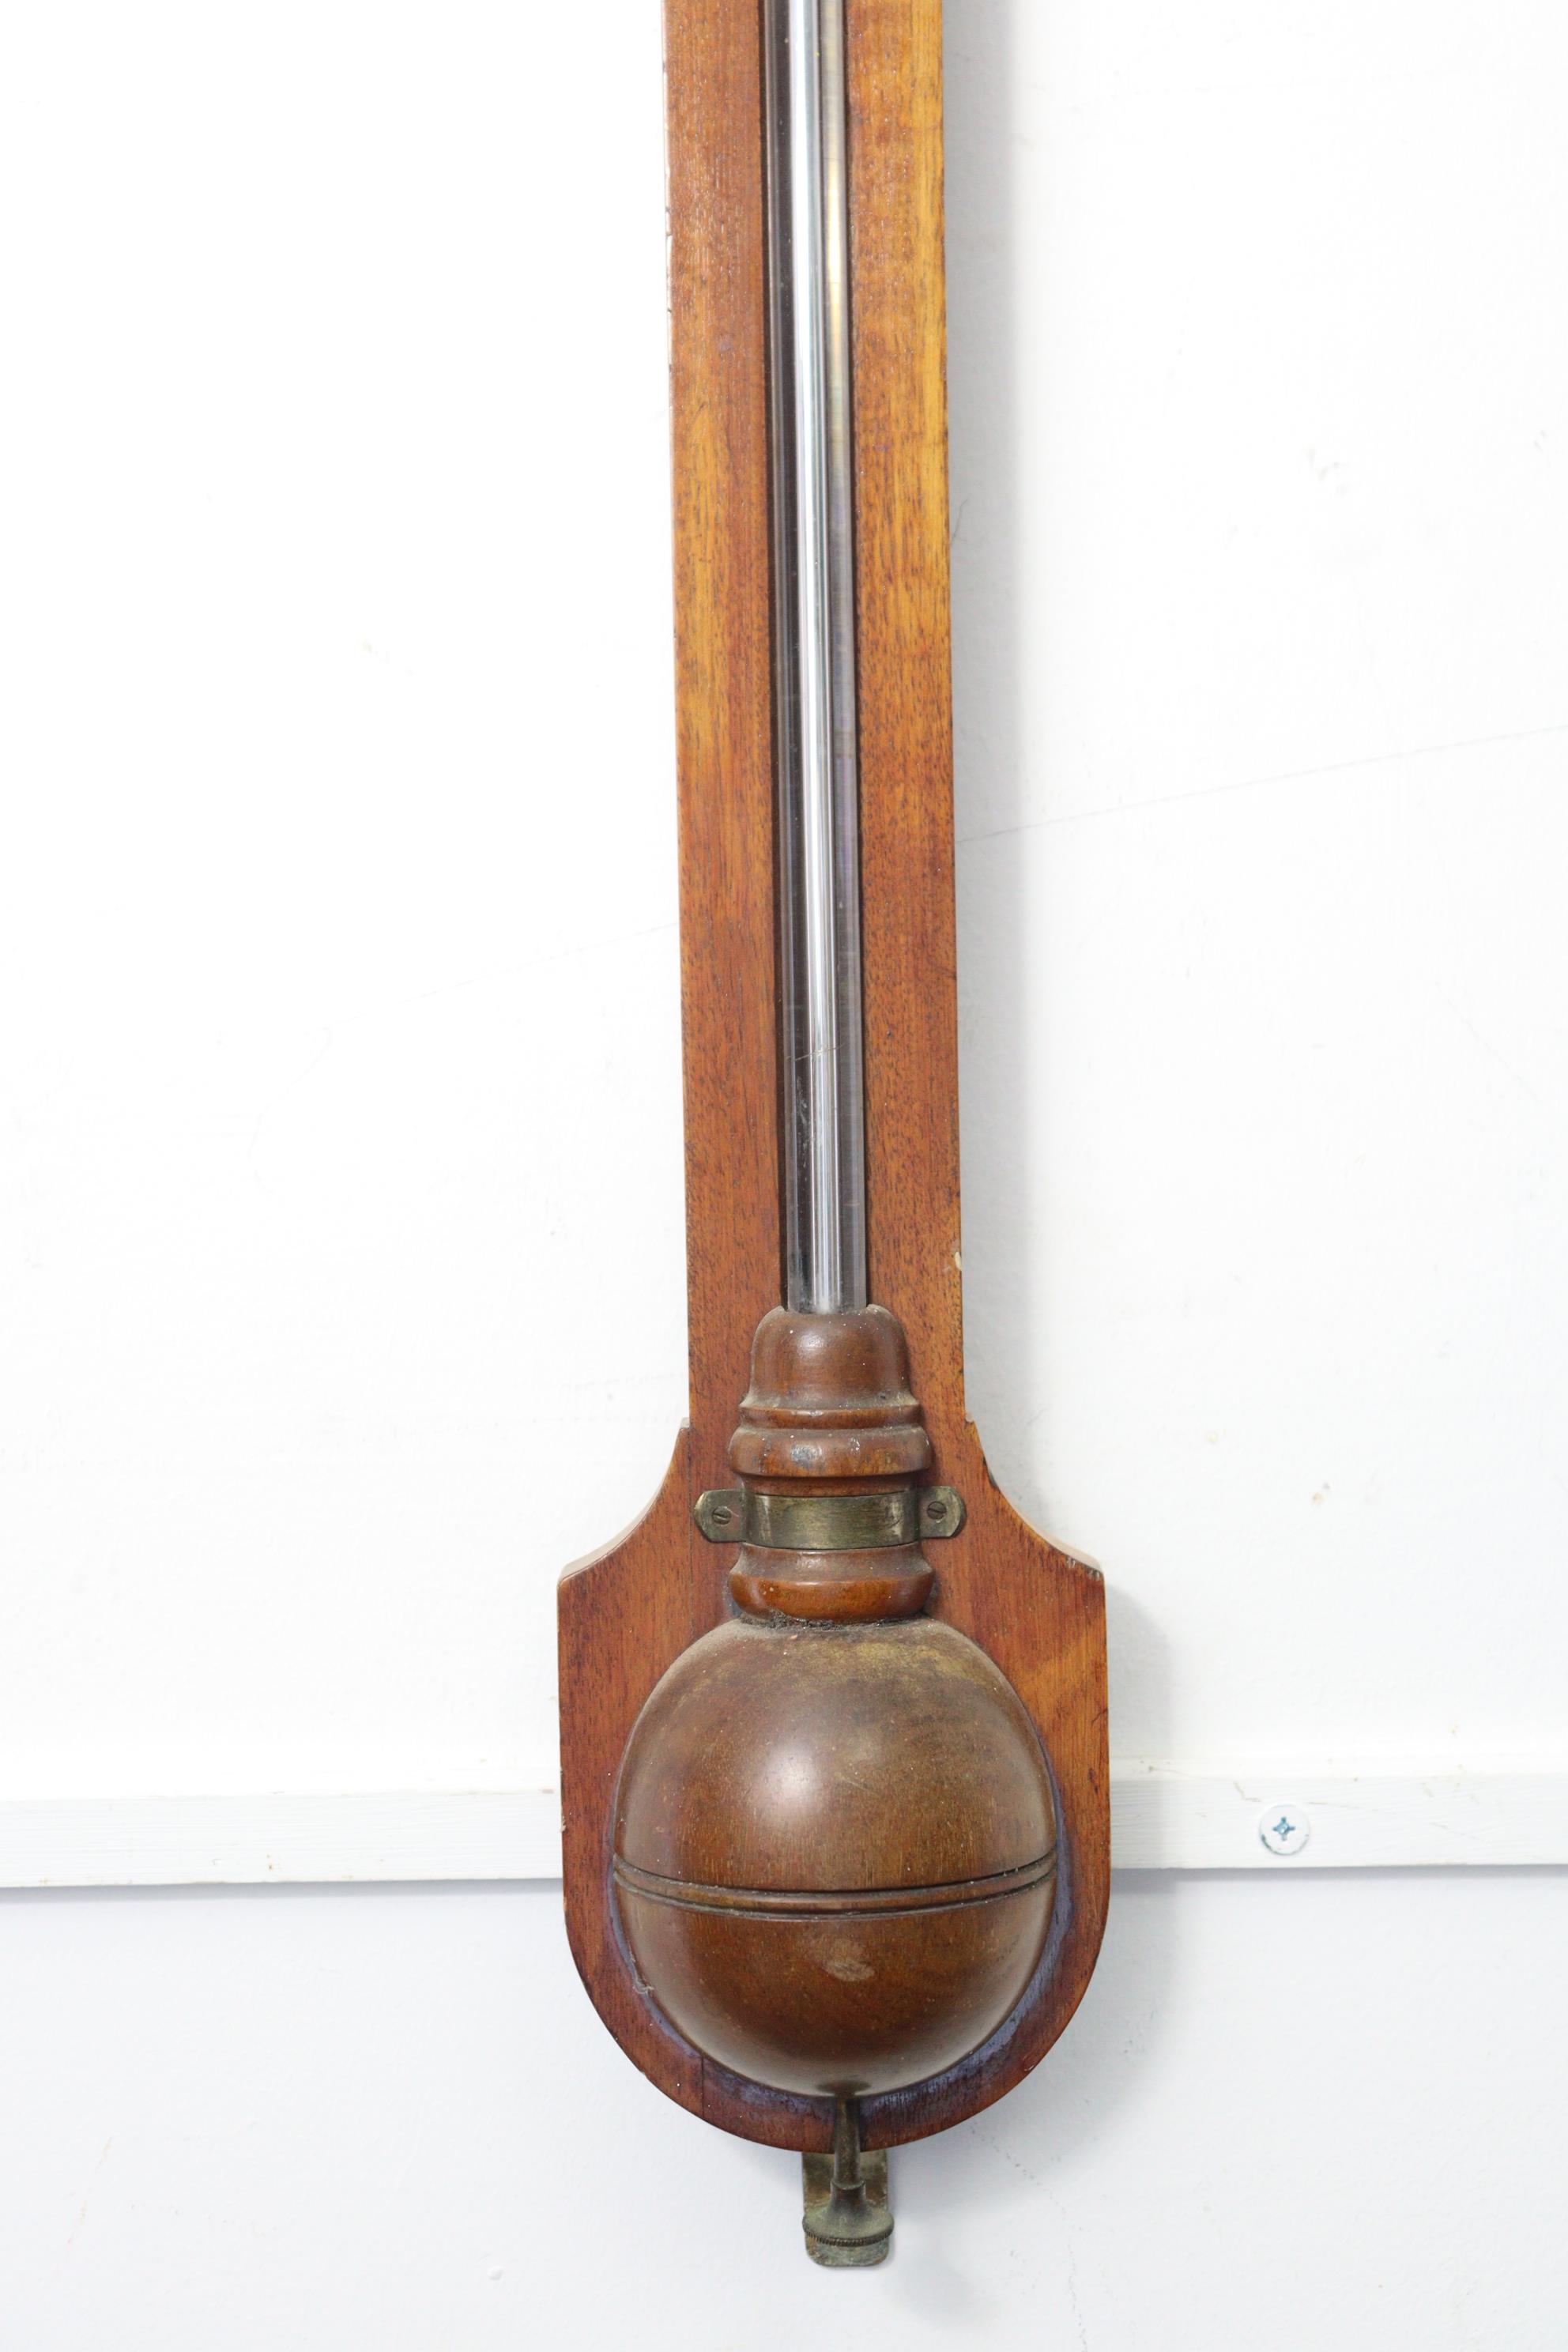 A 19th century Negretti & Zambra of London mahogany stick barometer, 36” high. - Image 3 of 5